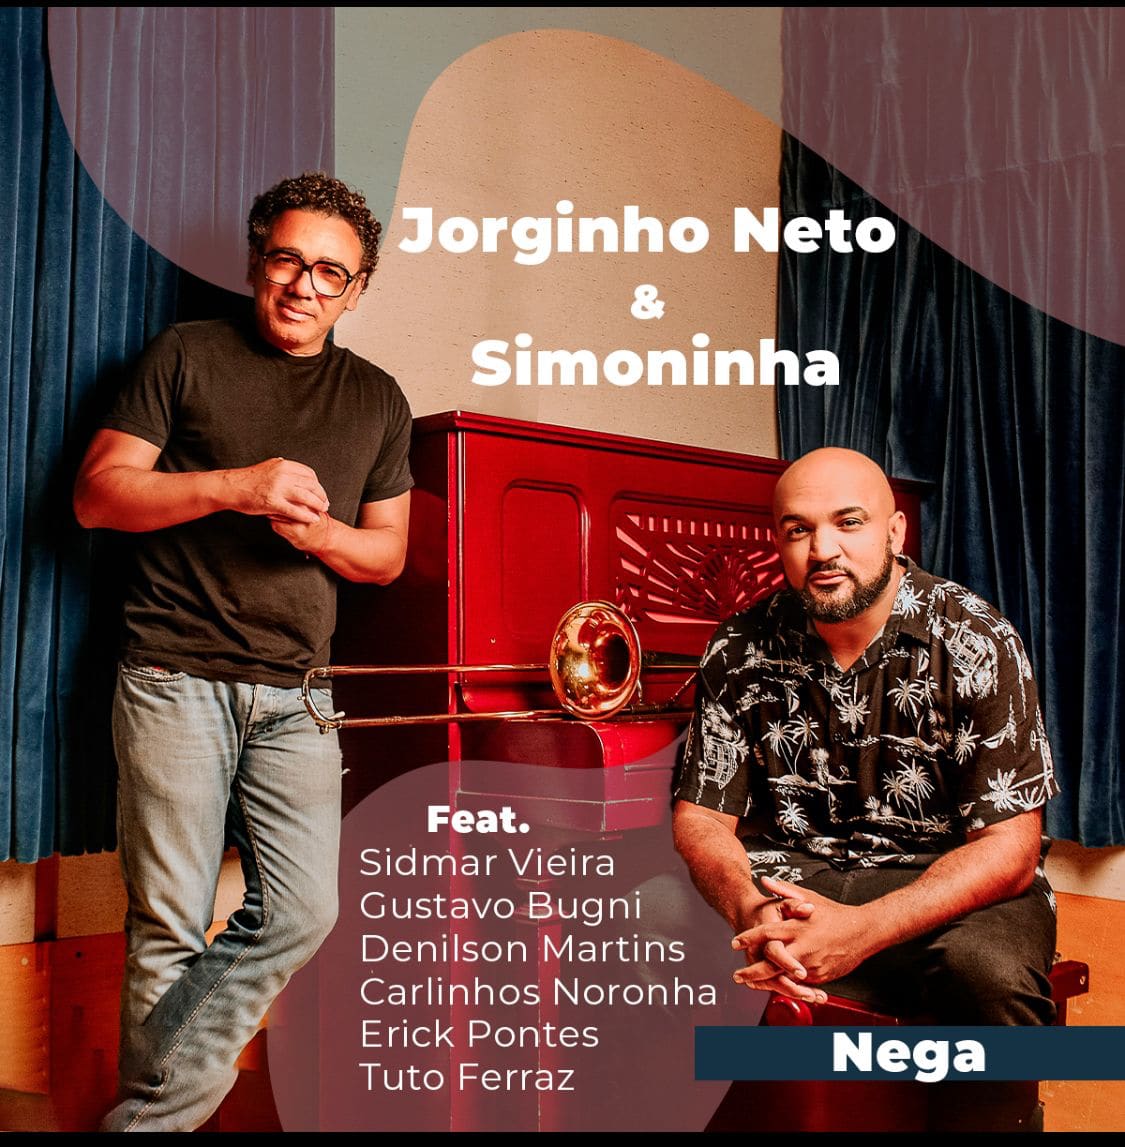 revistaprosaversoearte.com - Jorginho Neto convida Simoninha em single ‘Nega’